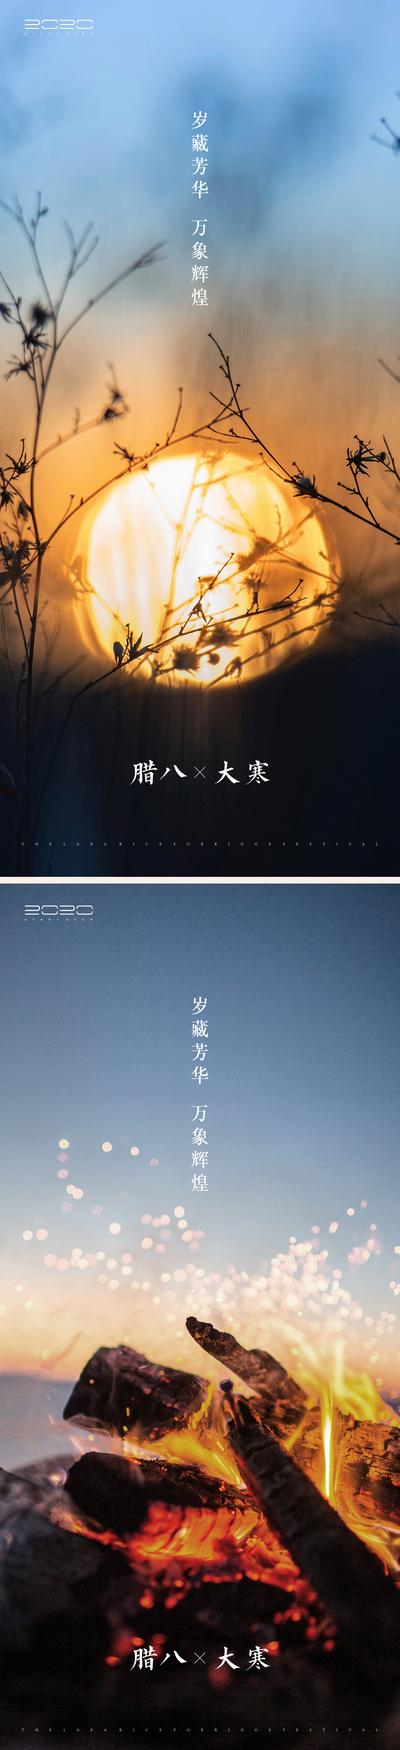 南门网 海报  二十四节气 中国传统节日 大寒 腊八 温暖 篝火 系列